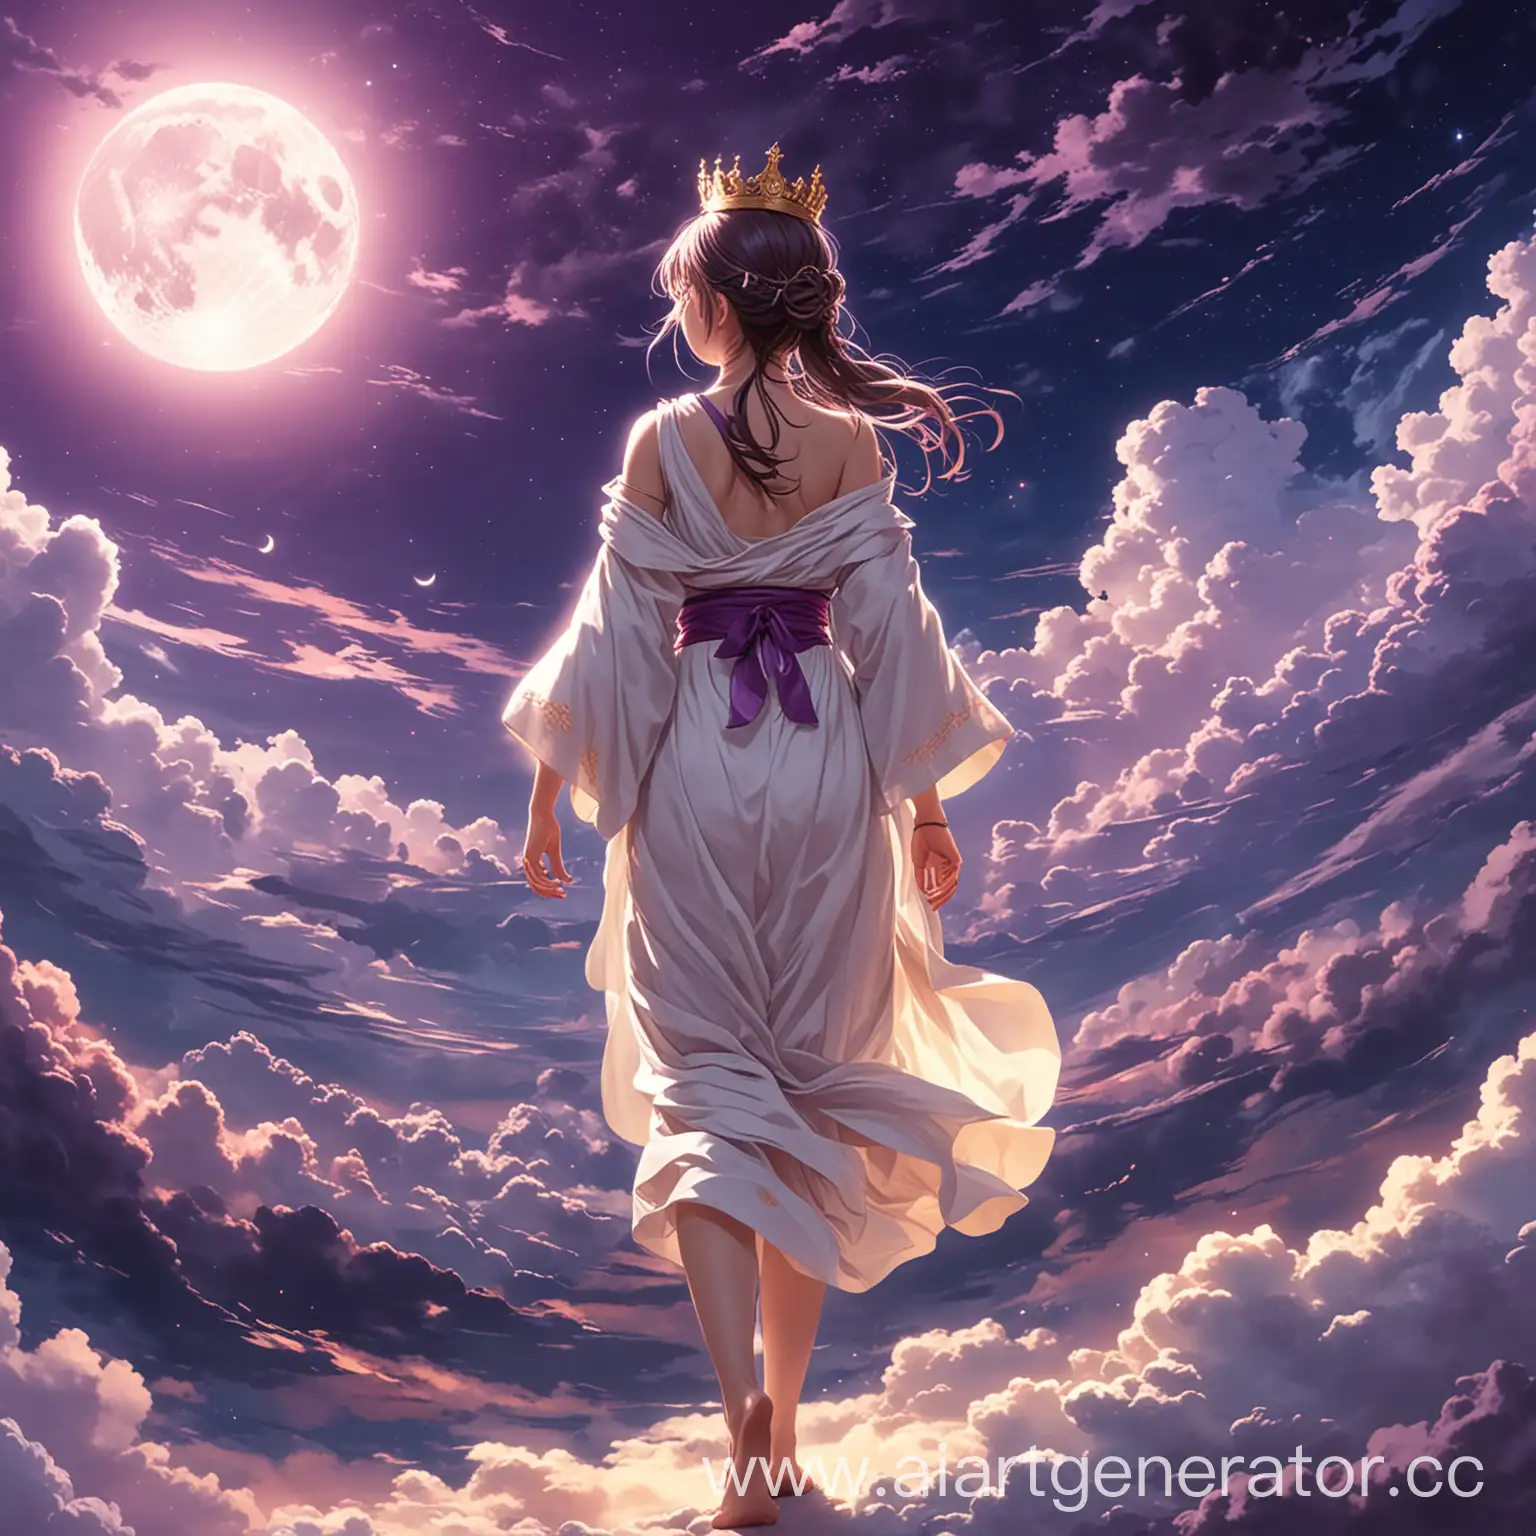 аниме девушка в белой тоге , с короной на голове идет по облакам к луне в фиолетовом небе